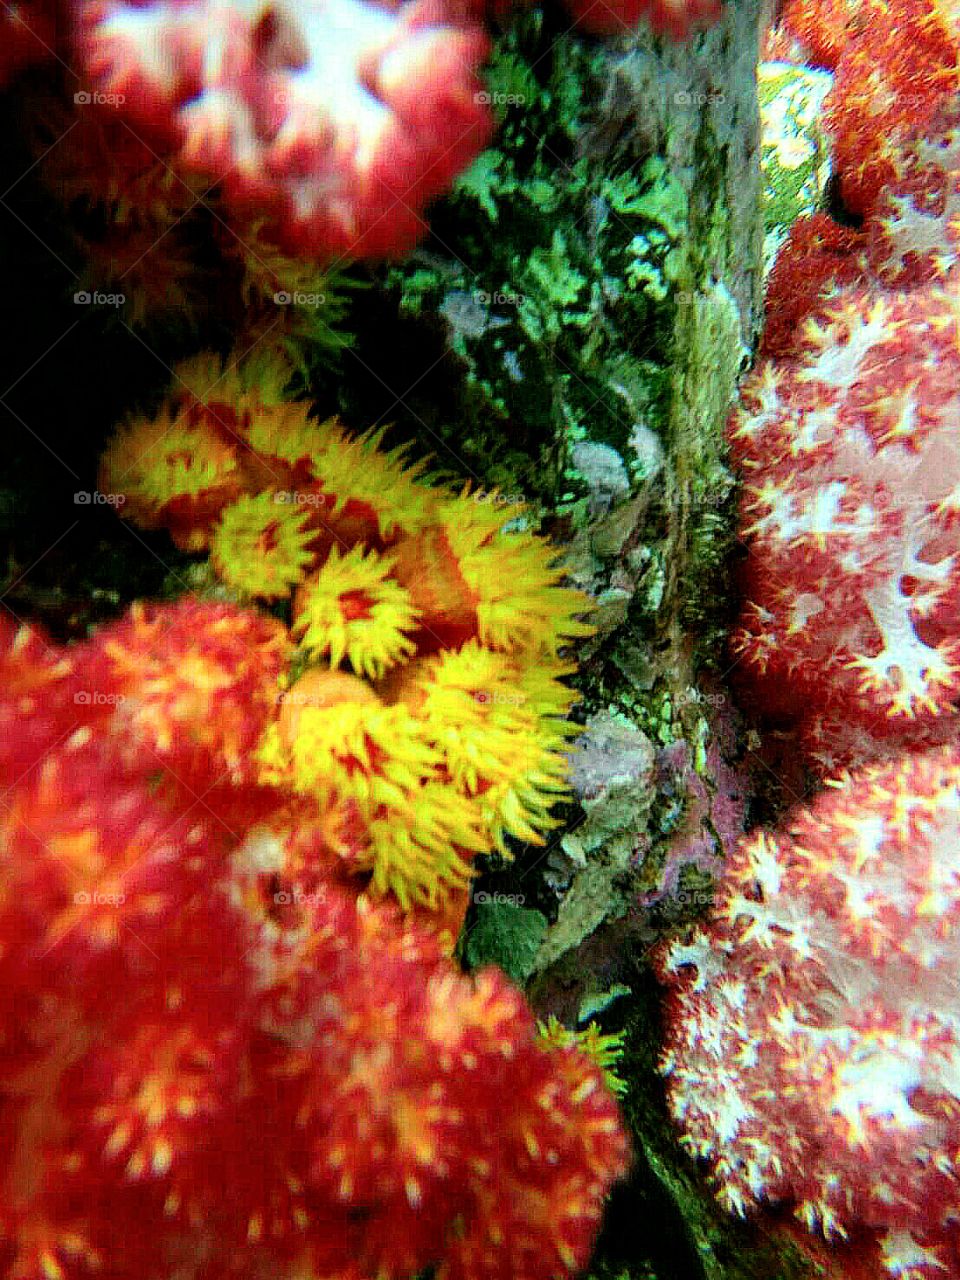 Ten color coral